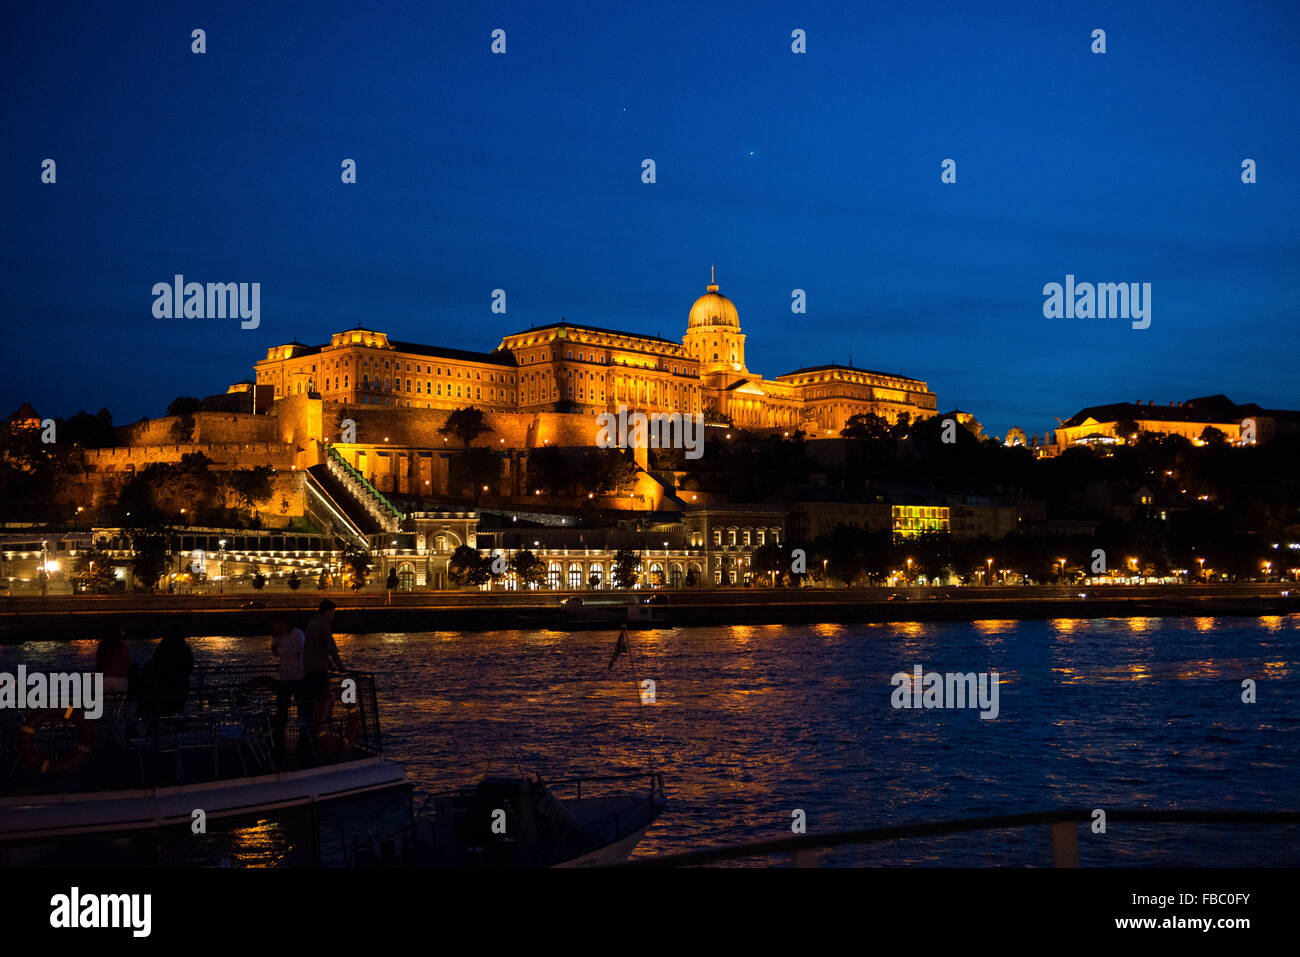 Palazzo reale, Castello di Buda, Museo Nazionale, Danubio, Dusk, Budapest, Ungheria, Foto Stock